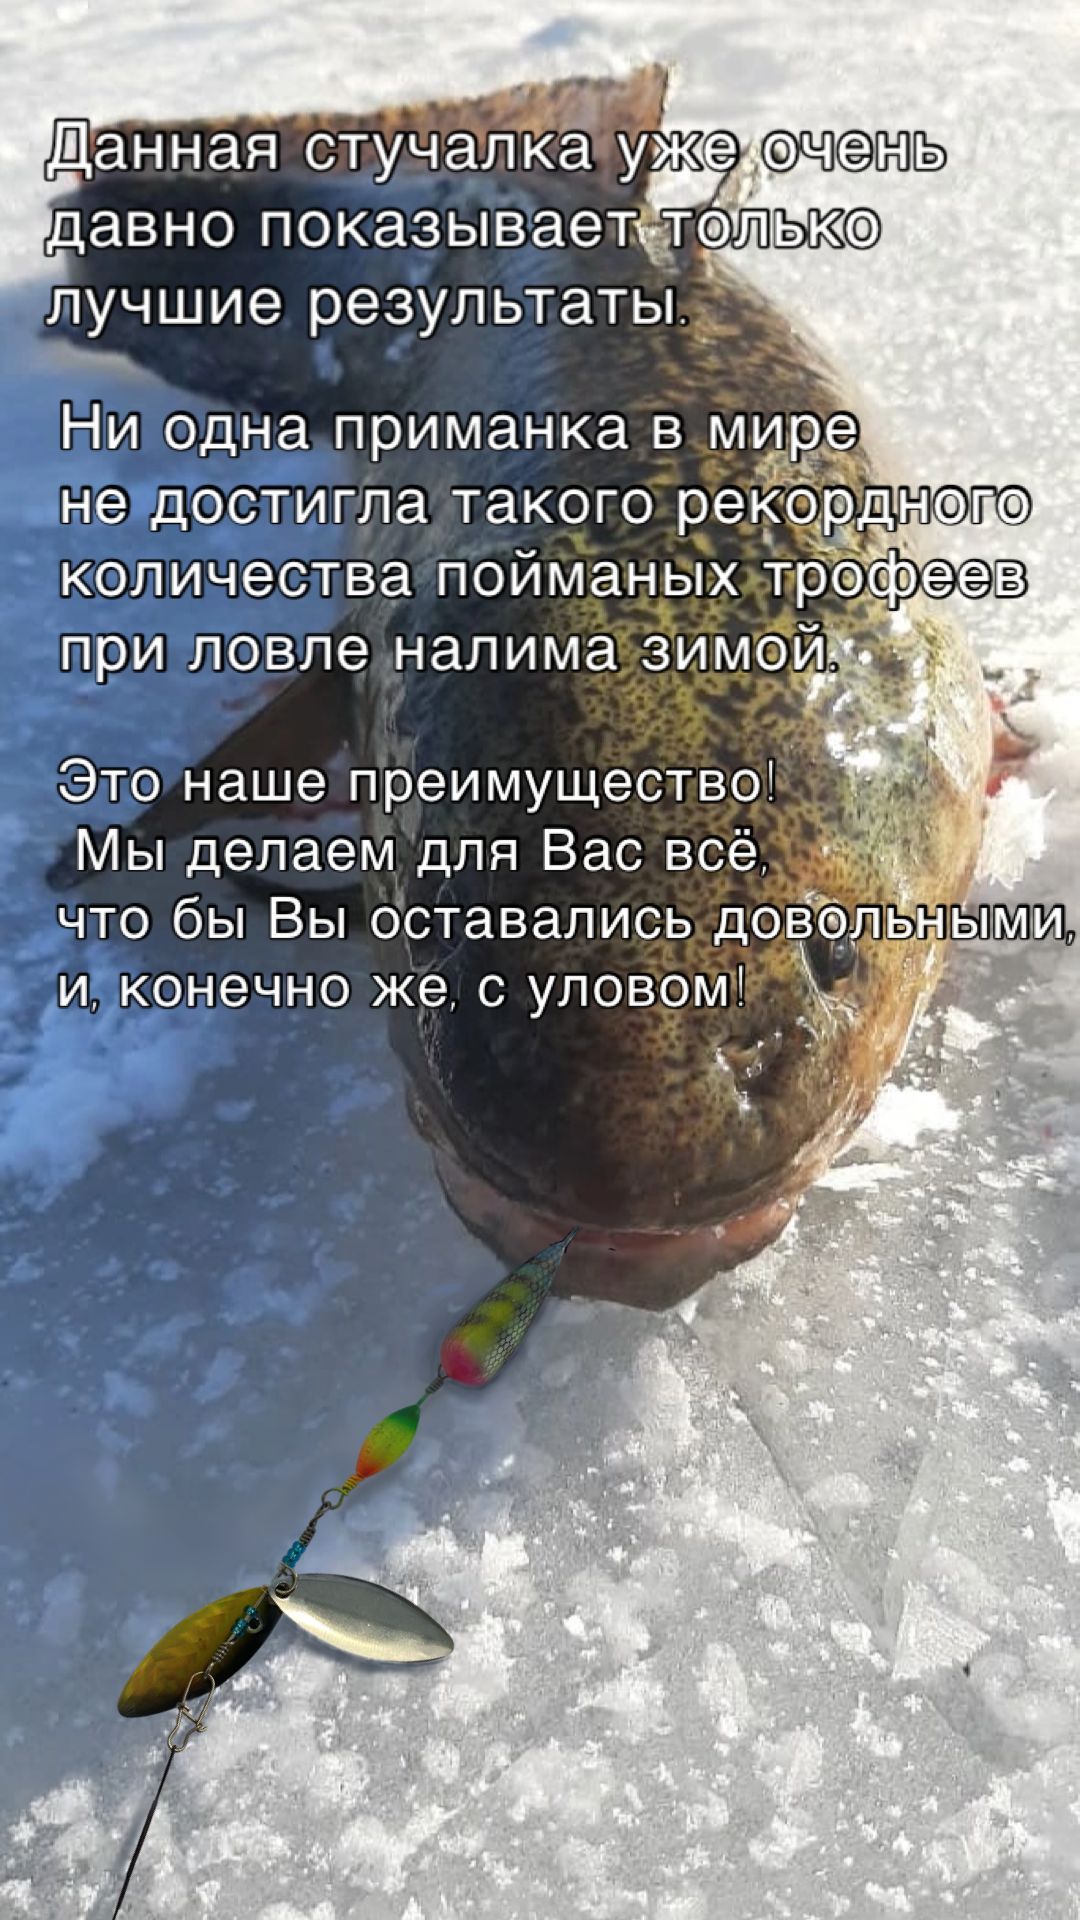 Способы и особенности ловли налима - Новосибисркий клуб охотников и рыбаков HunStory